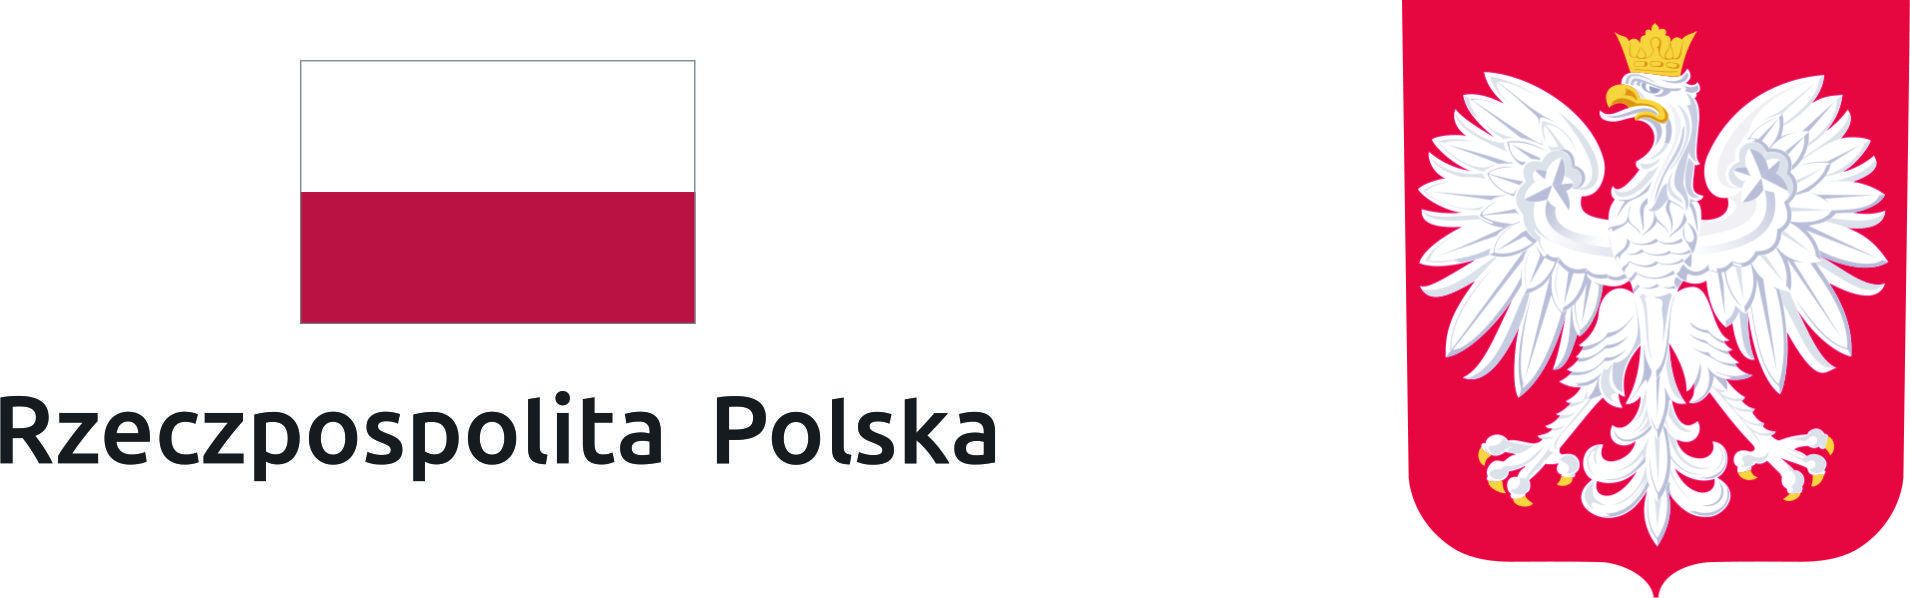 Godło Rzeczpospolitej Polskiej z flagą